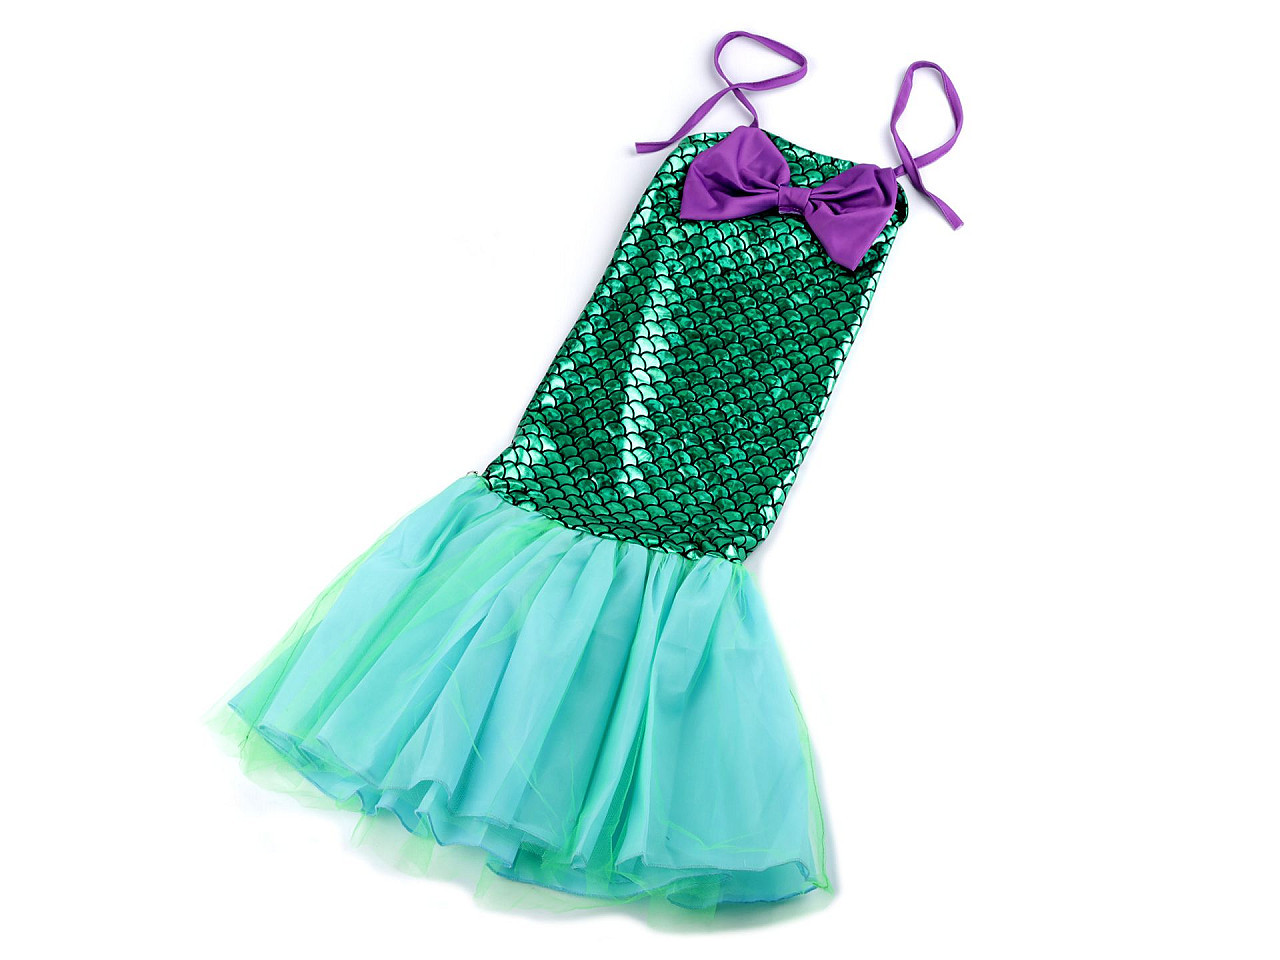 Karnevalový kostým - mořská panna, barva 1 (vel. S) zelená mořská